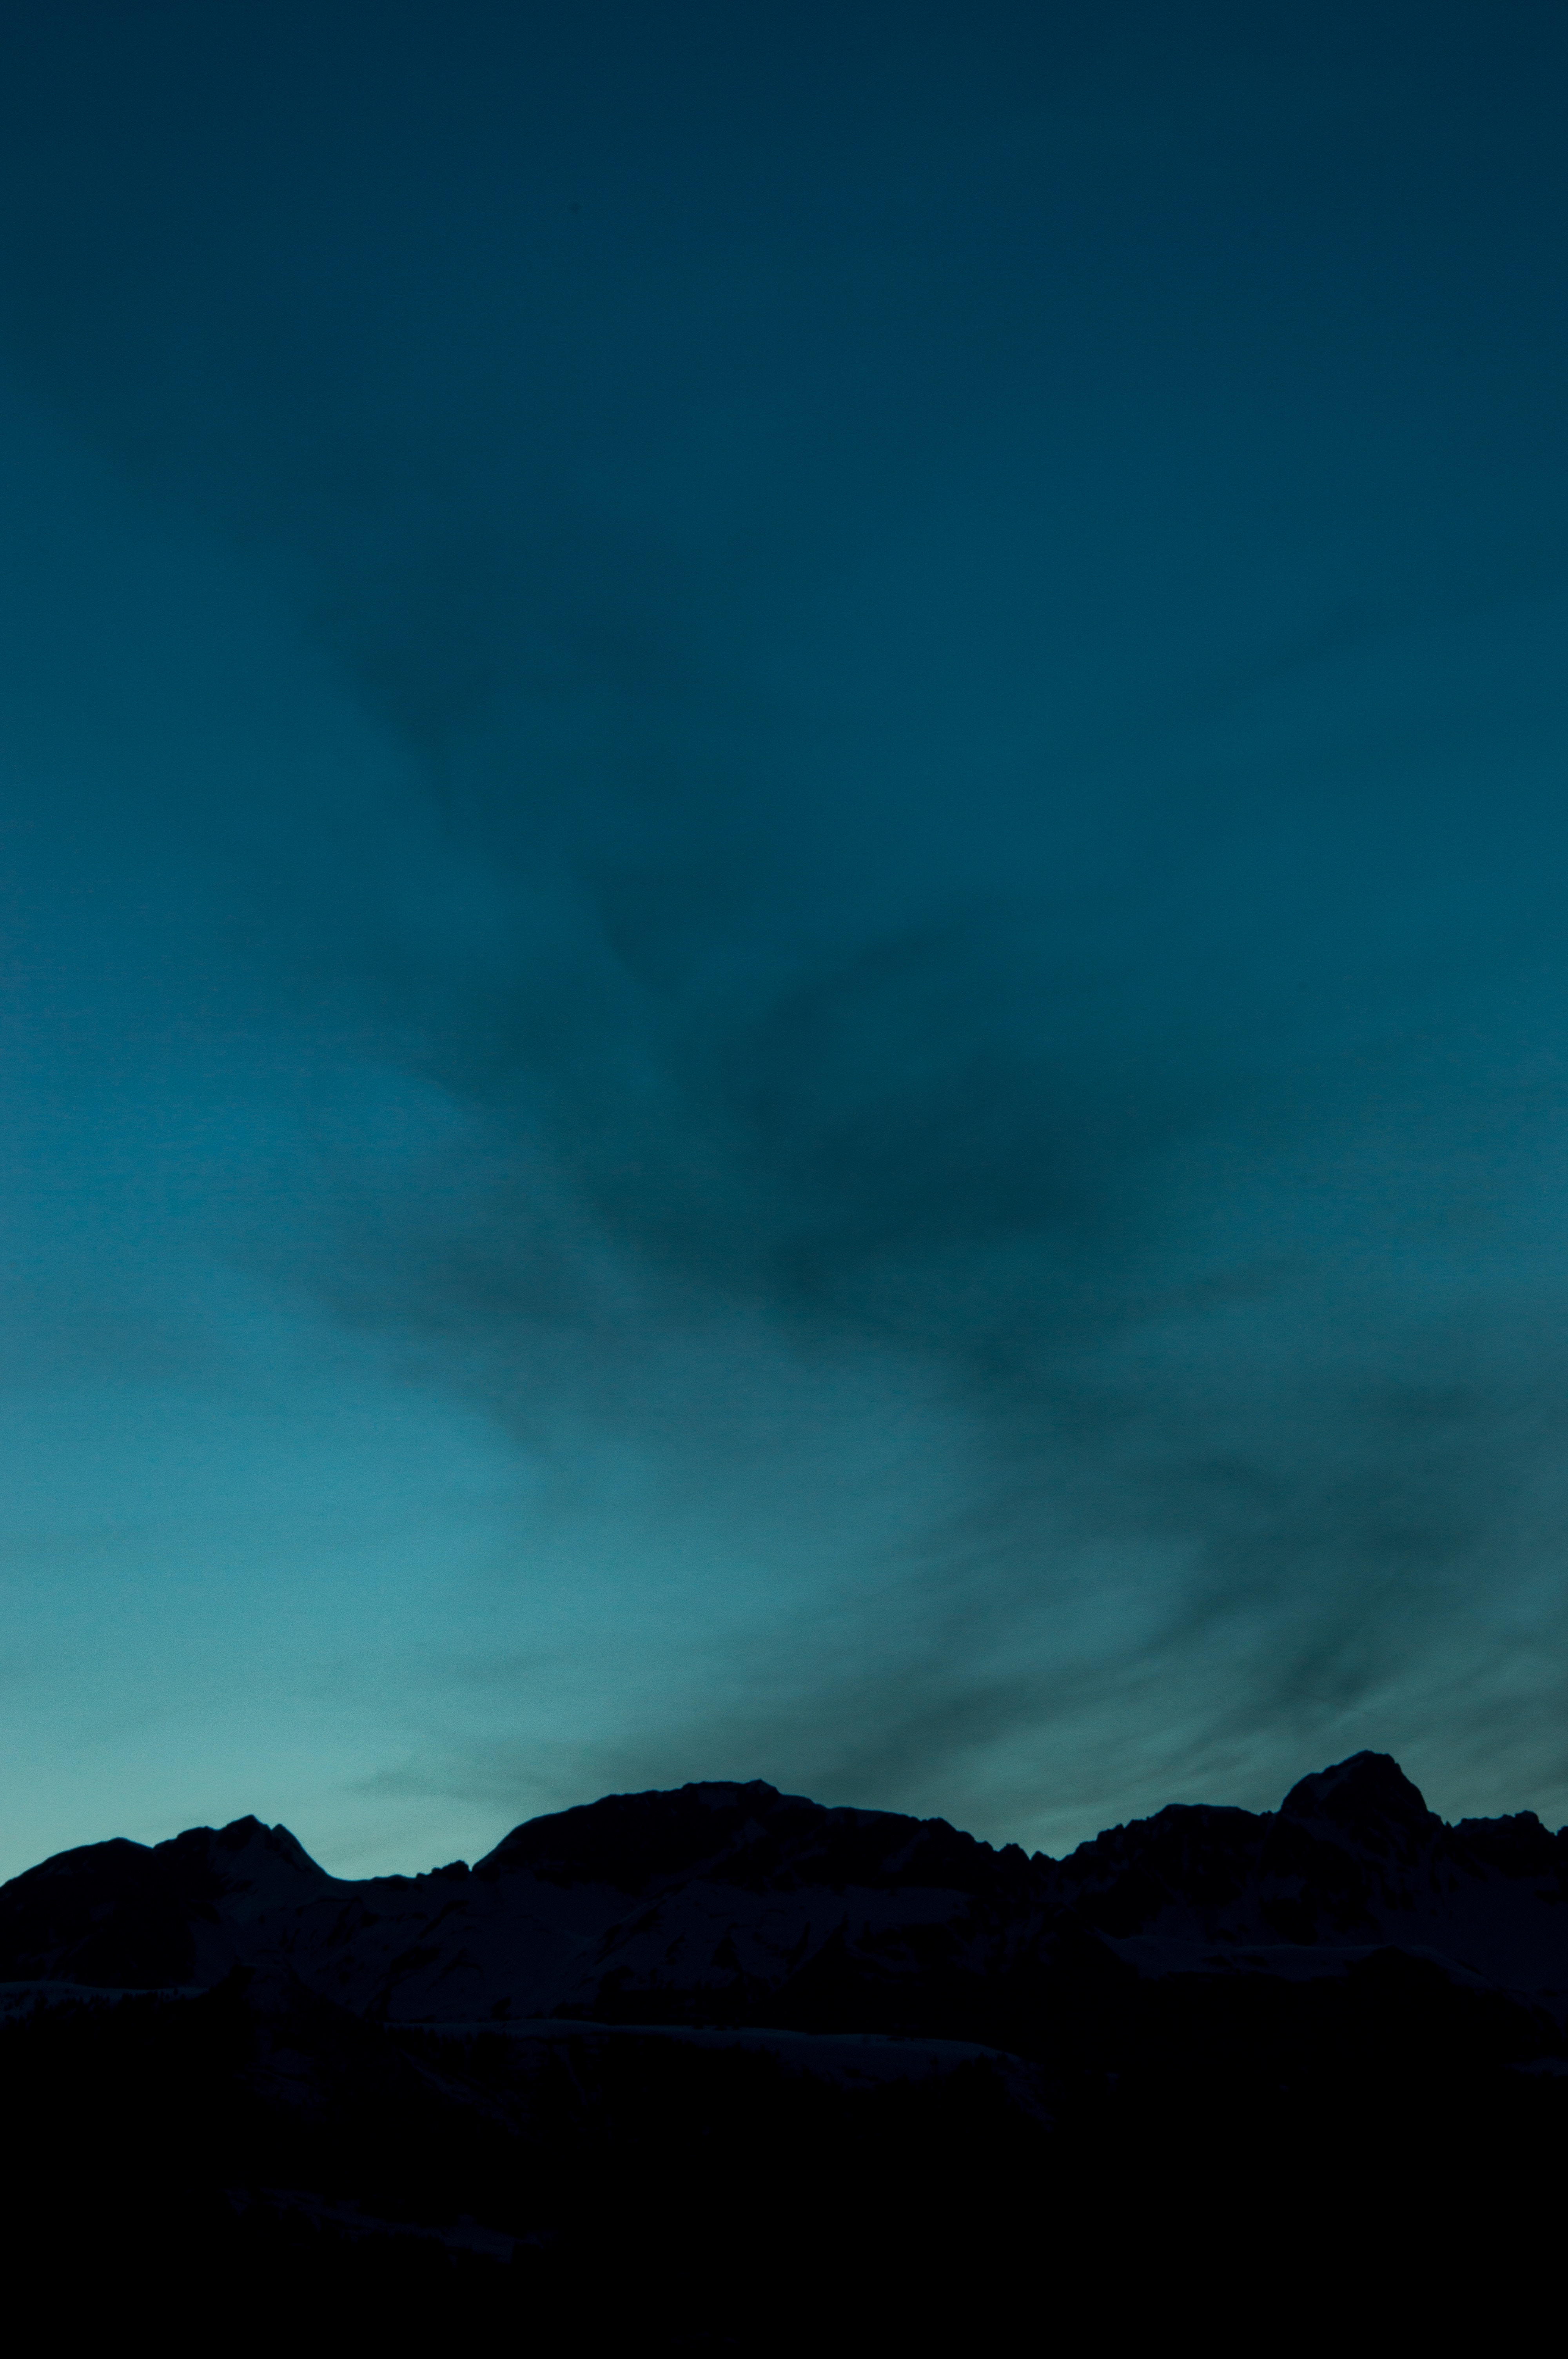 mountains, dark, twilight, dusk, outlines Free Stock Photo